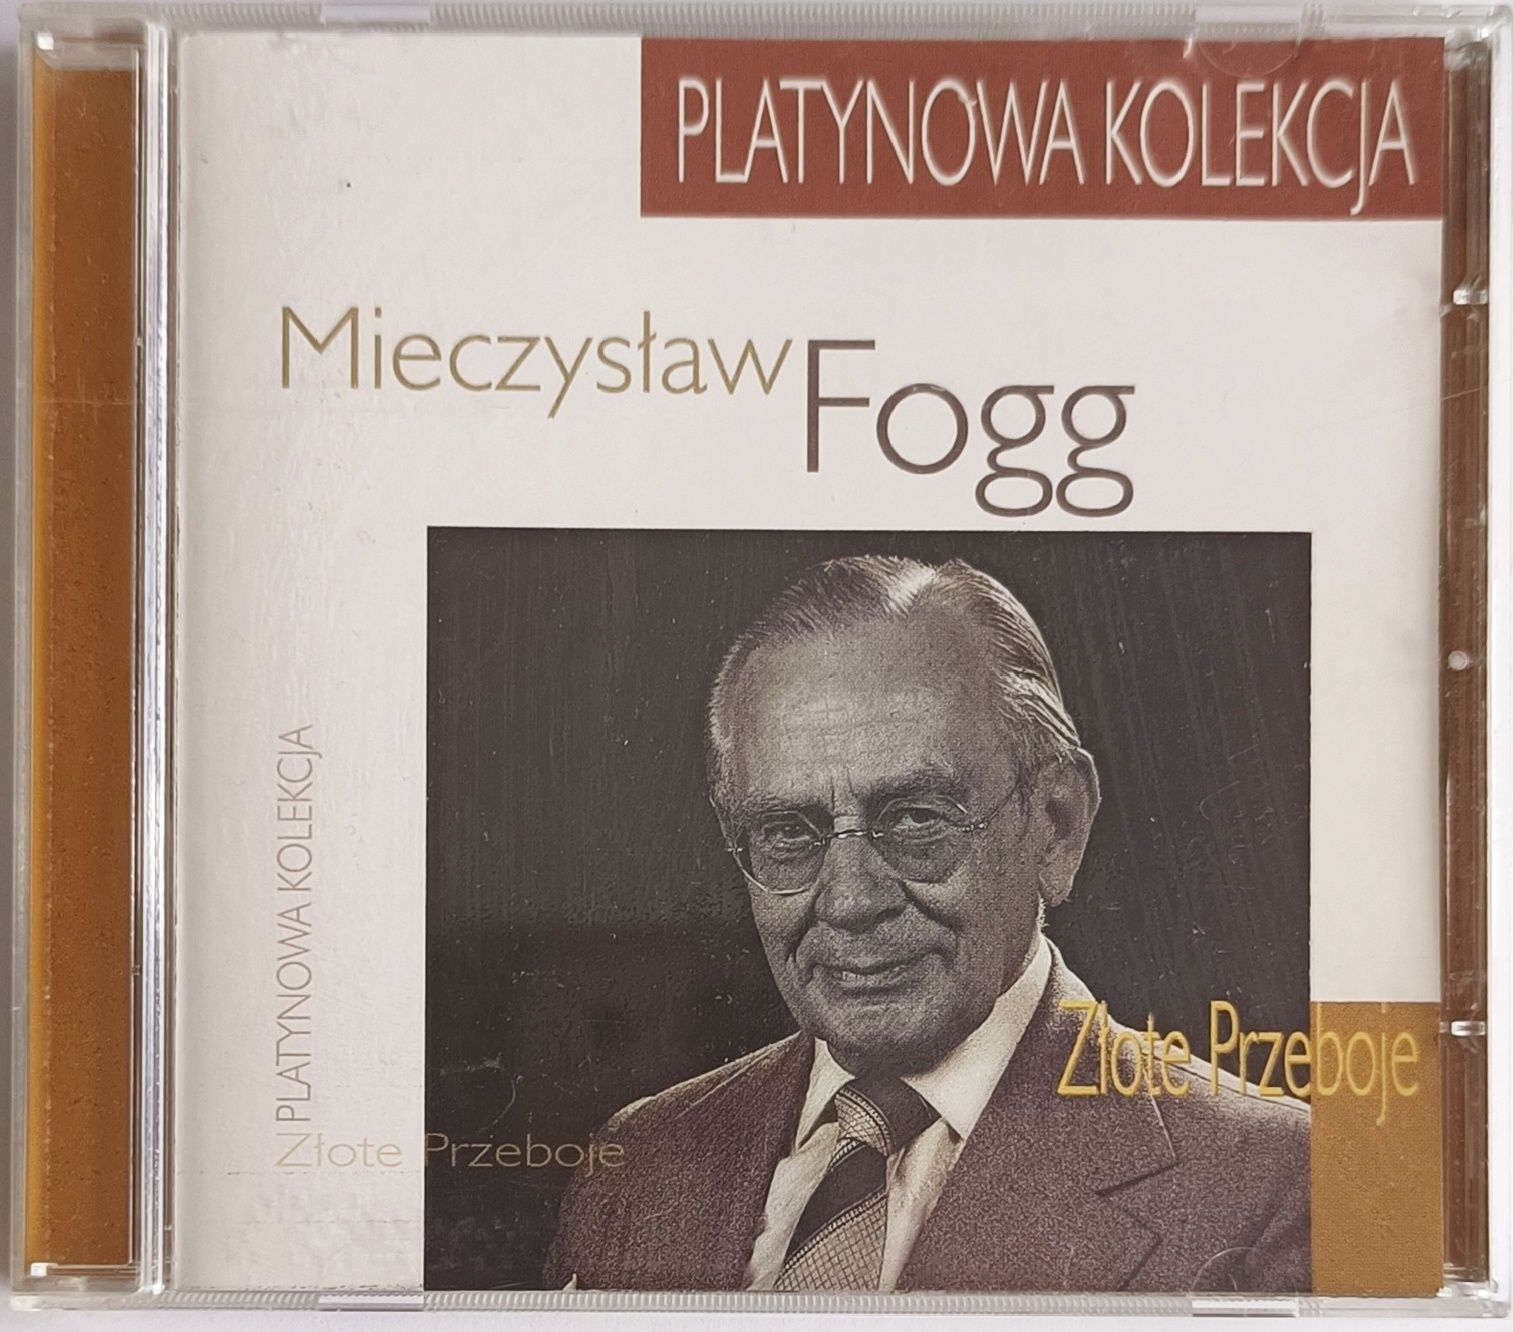 Mieczysław Foog Złote Przeboje 1999r